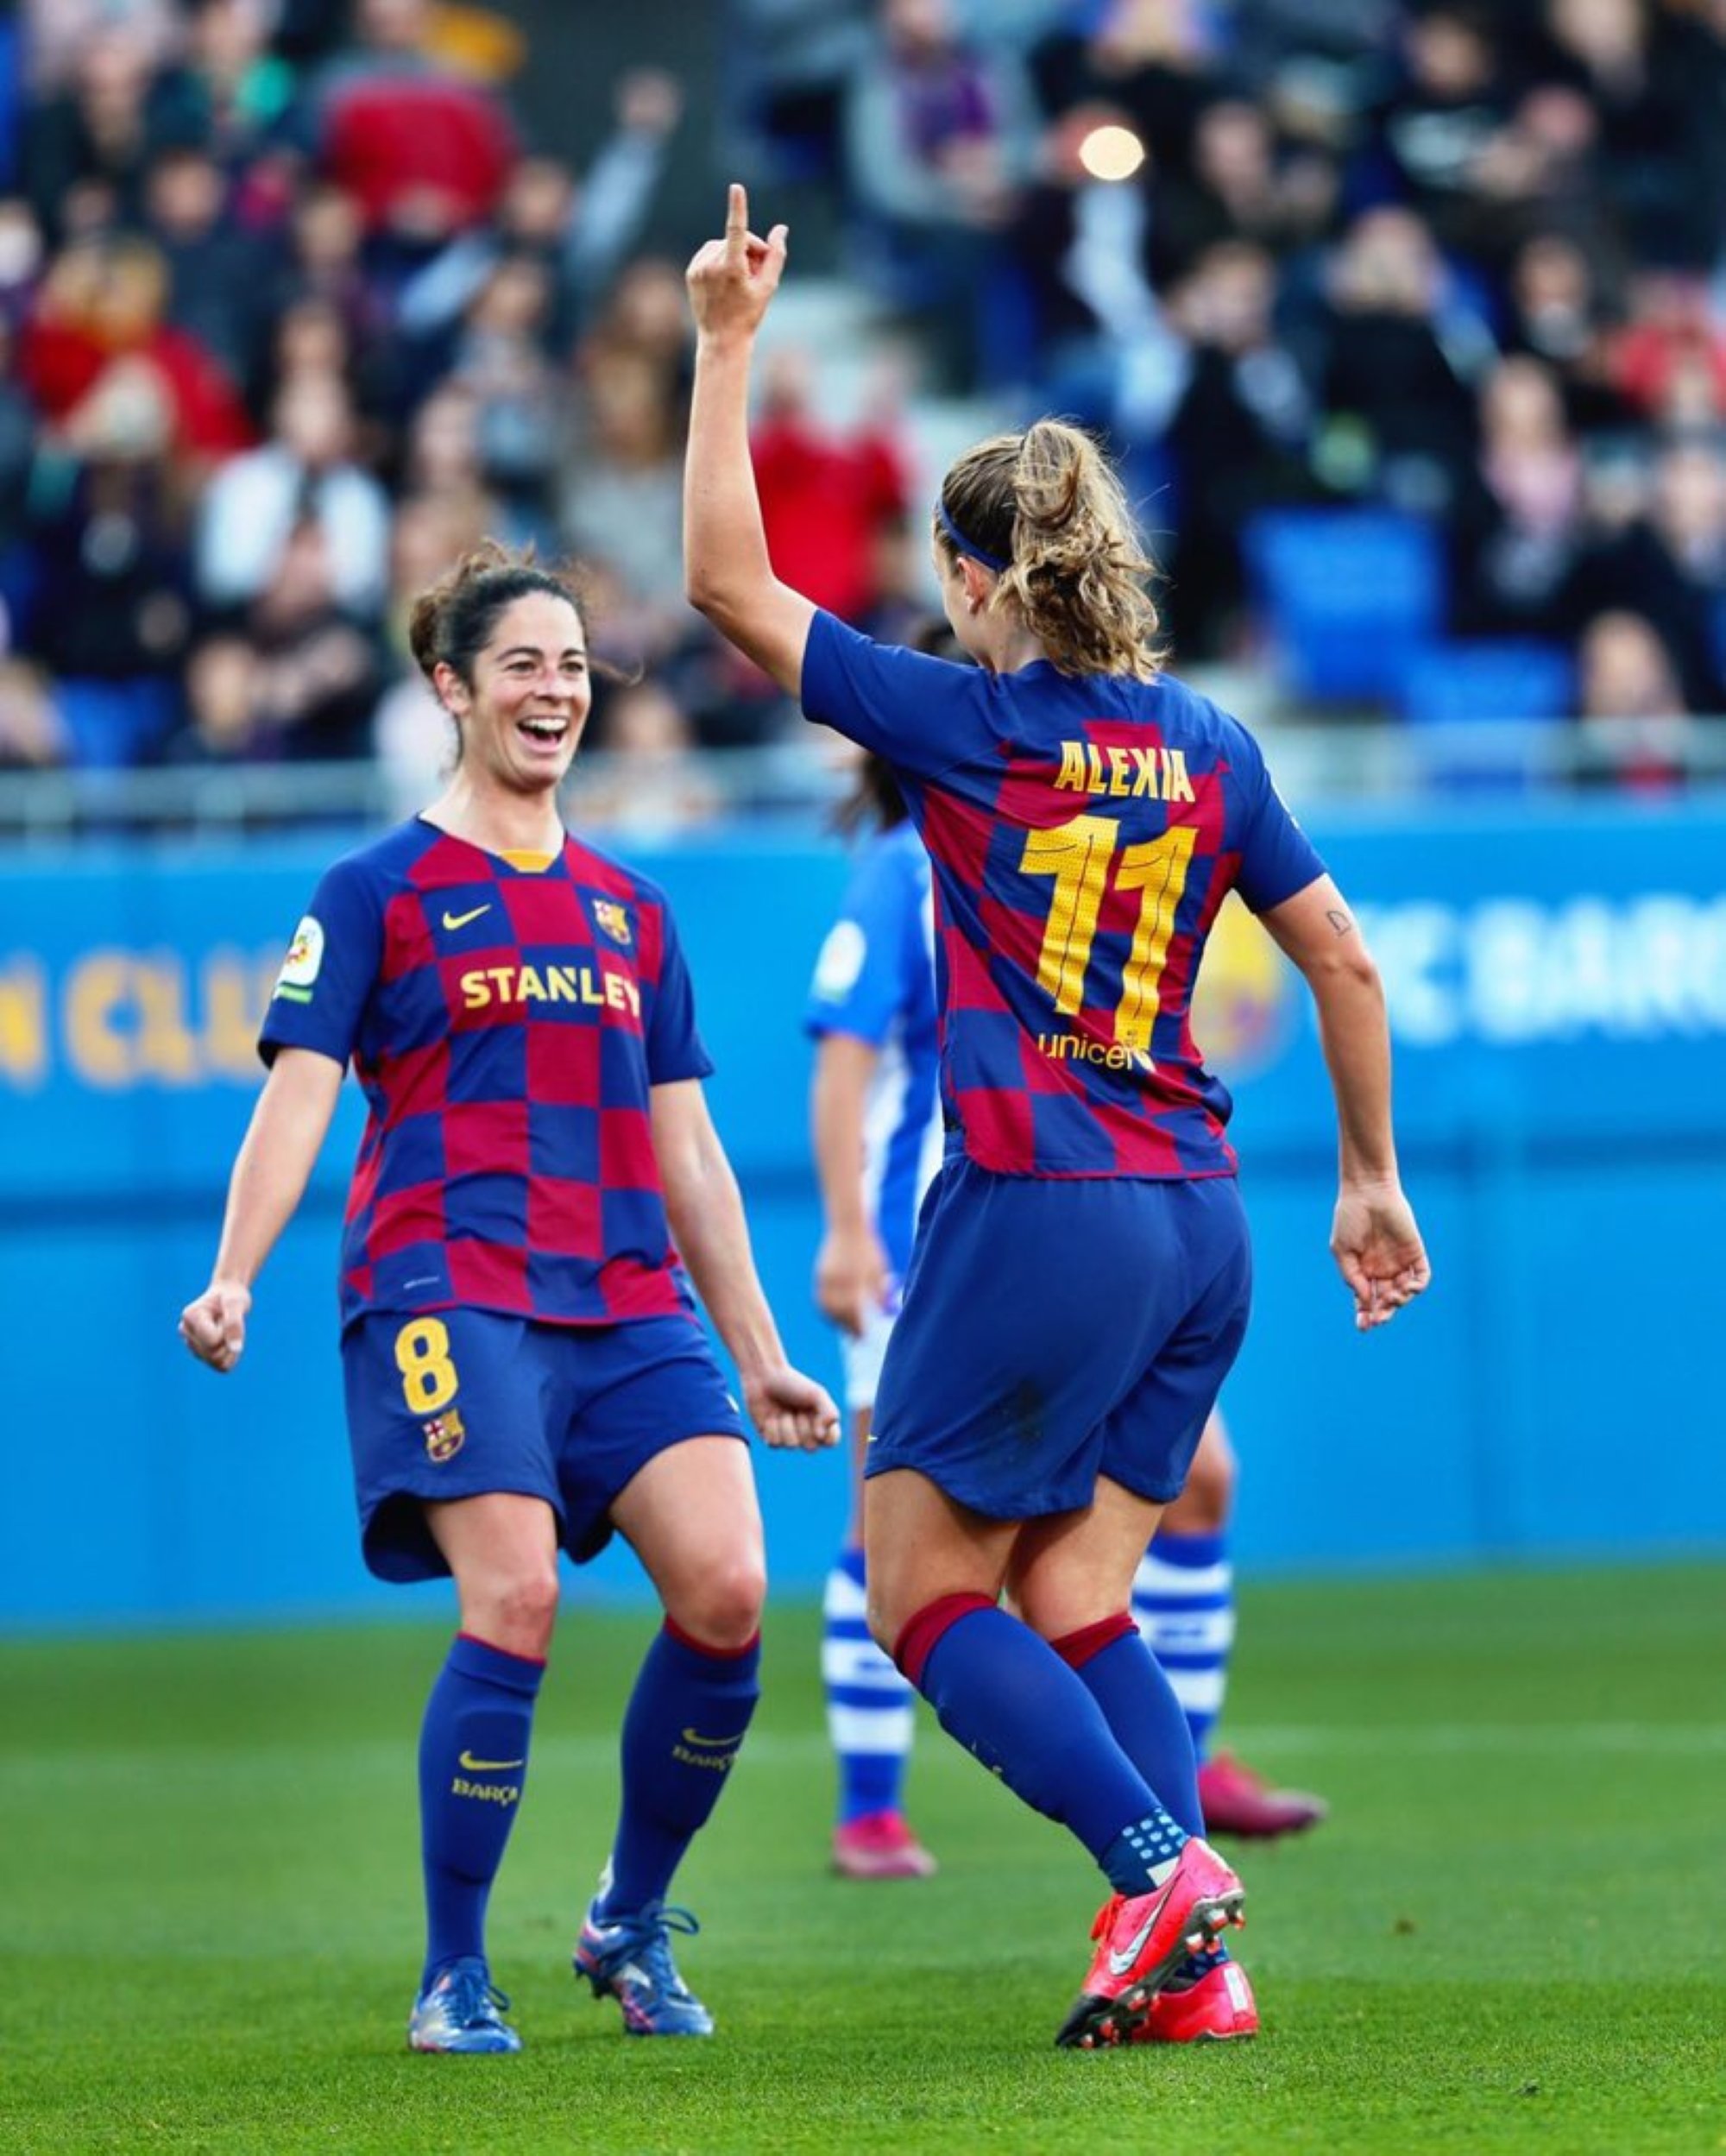 La profesionalización del fútbol femenino español ya es un hecho